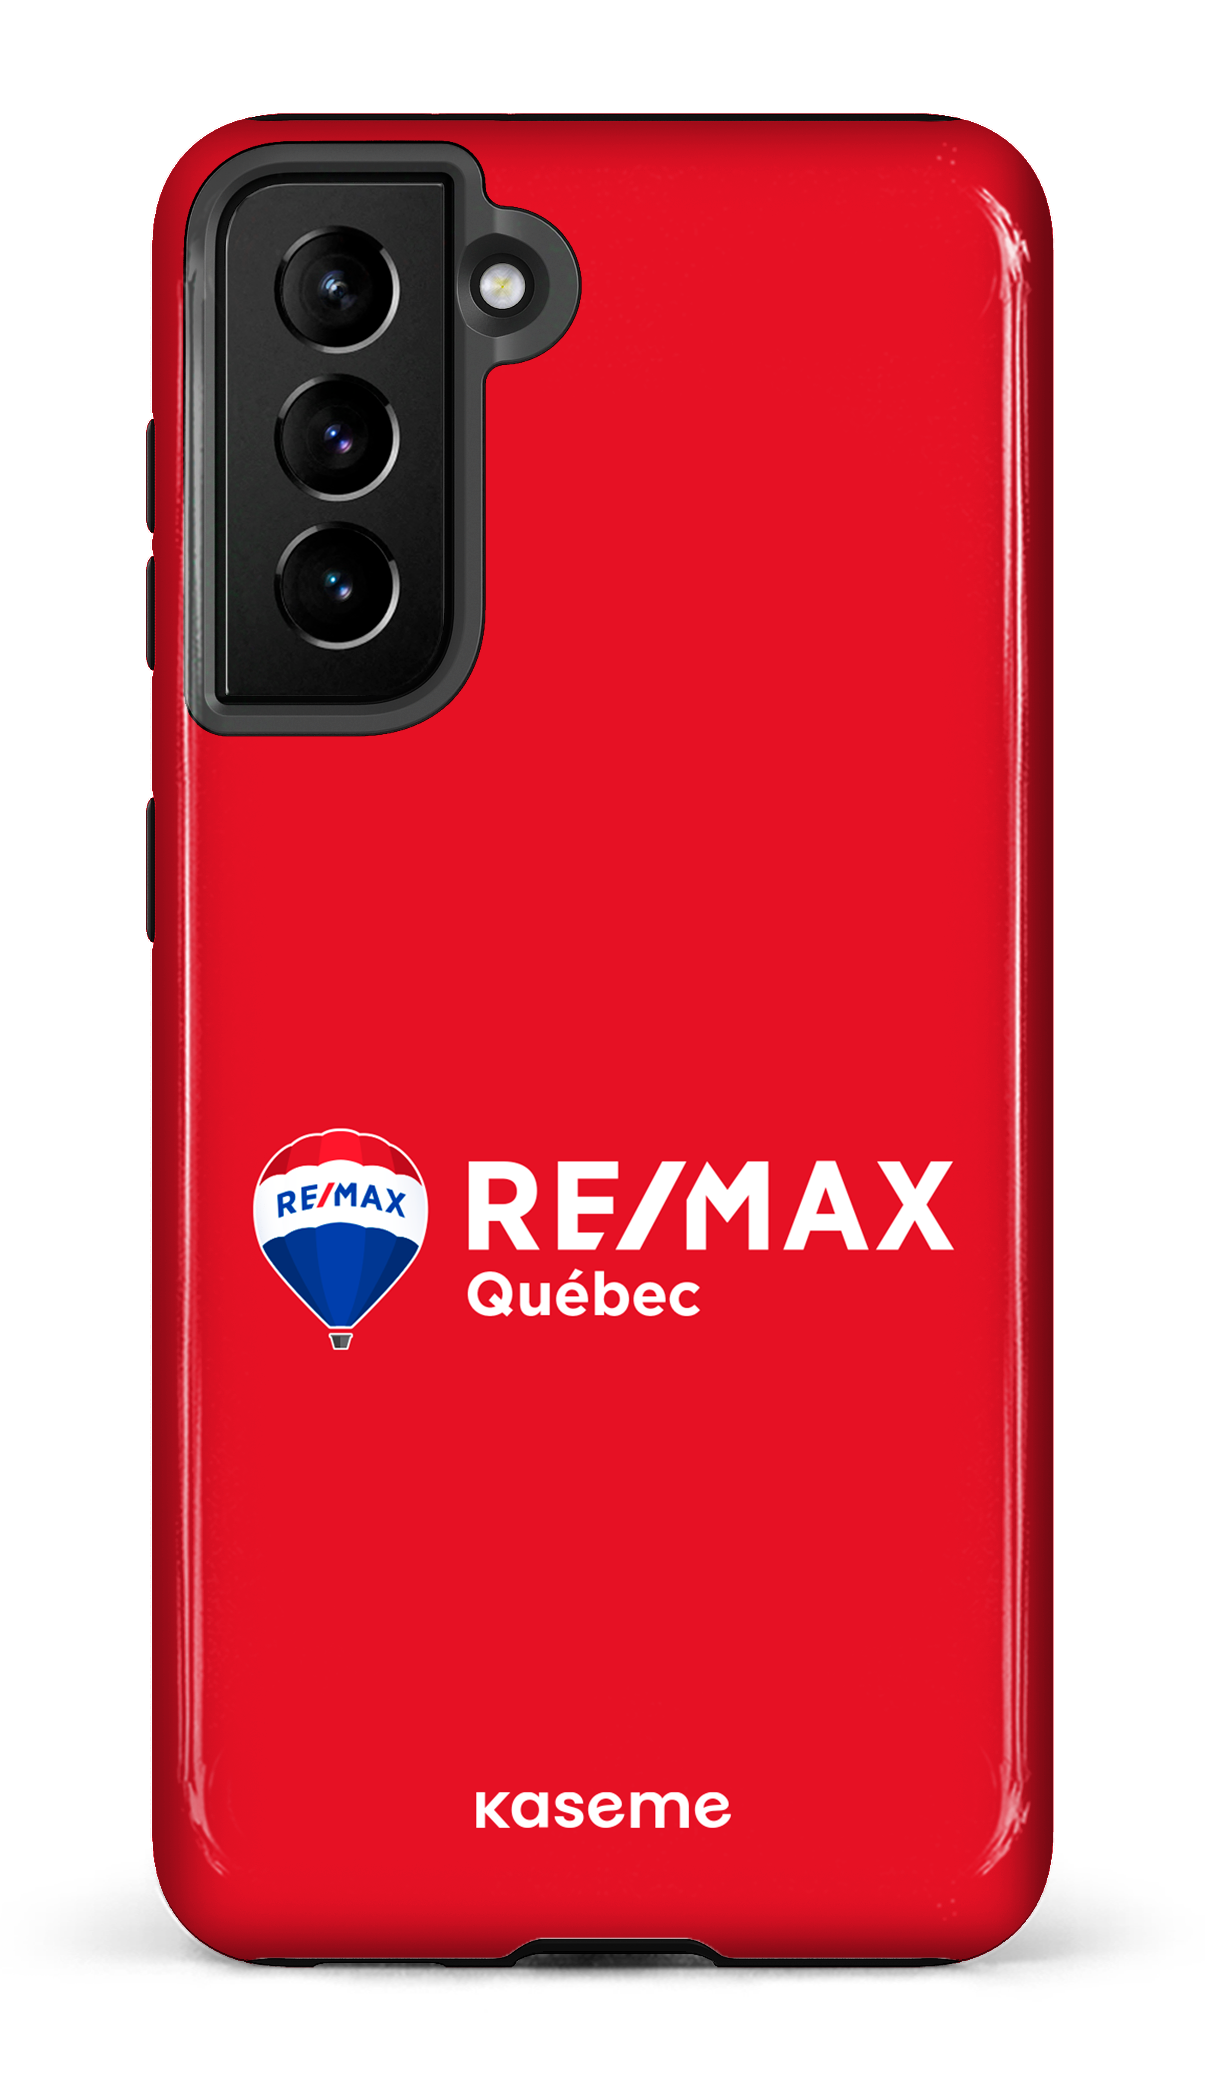 Remax Québec Rouge - Galaxy S21